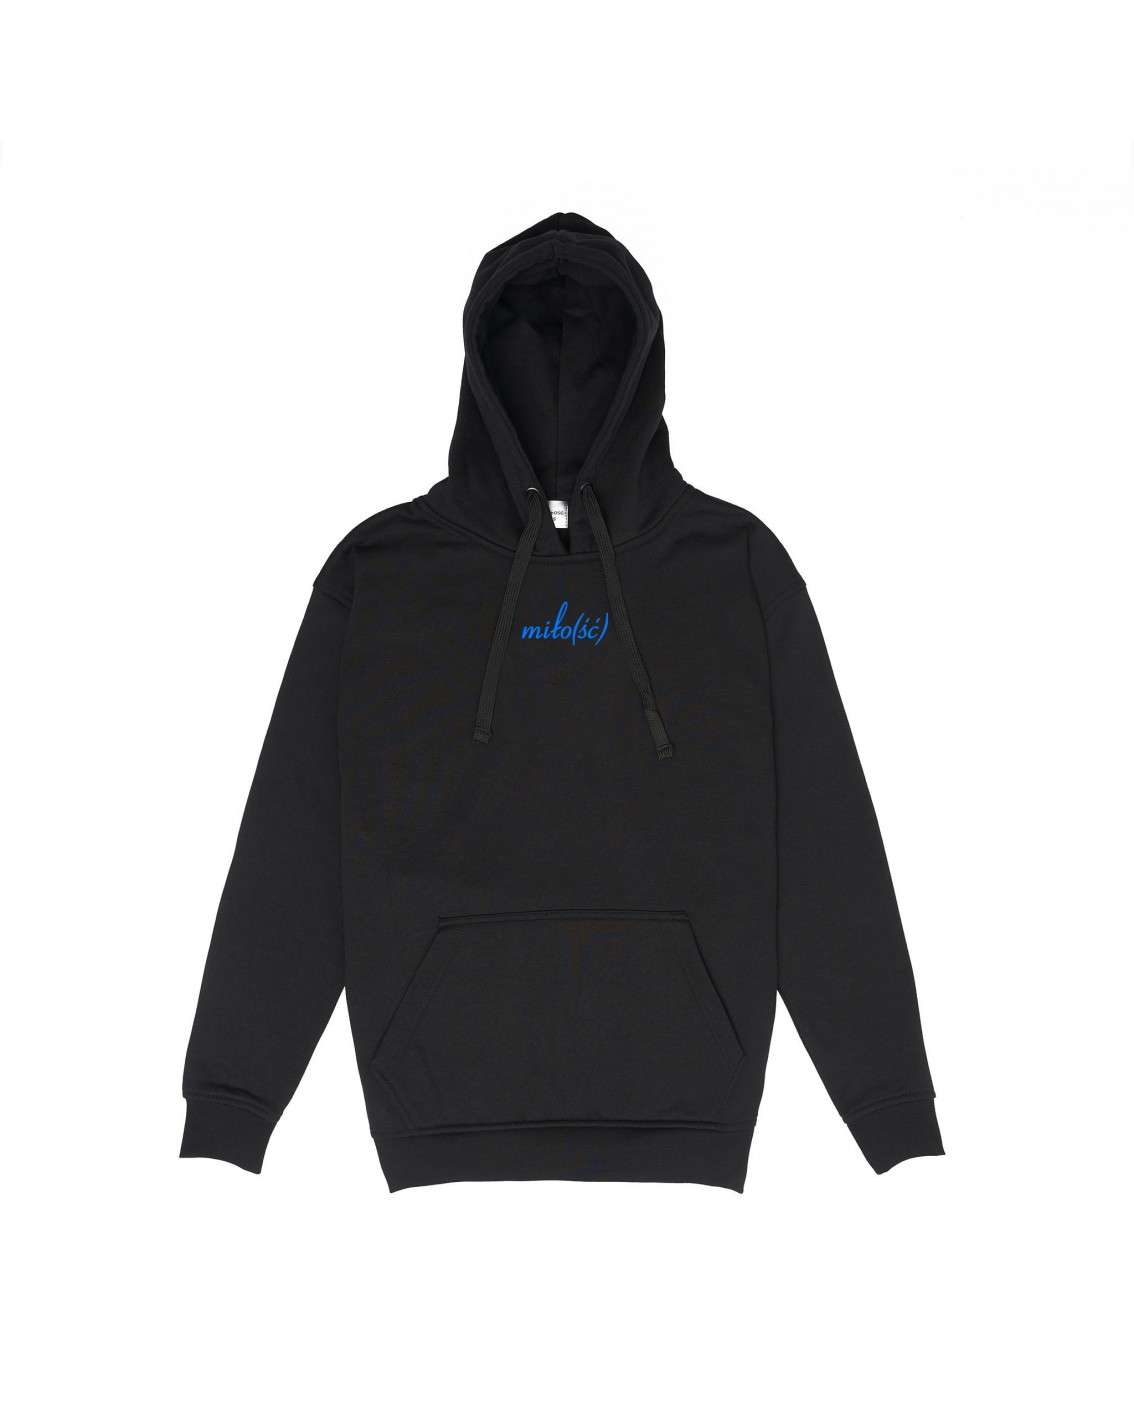 New! Zestaw Miło(ść) czarne hoodie z logo